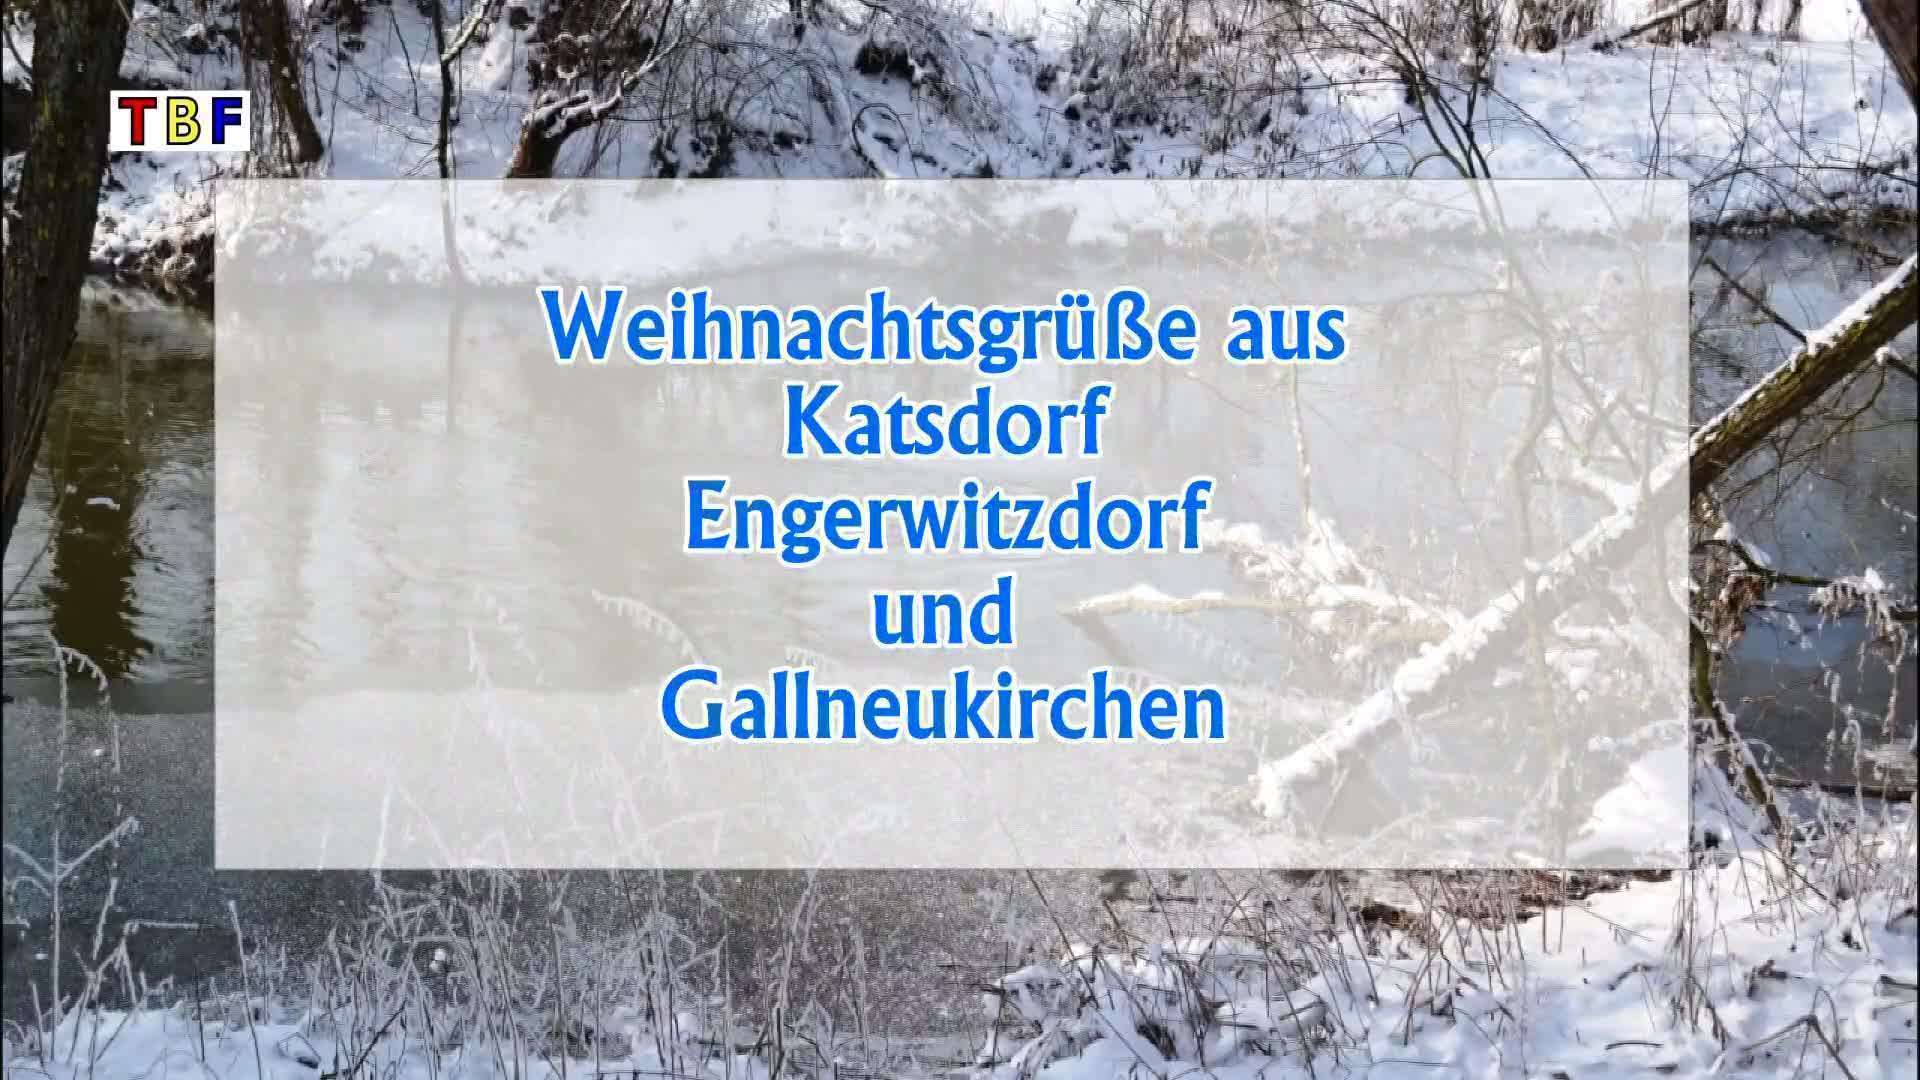 Weichnachtsgrüße aus Katsdorf, Engerwitzdorf und Gallneukirchen 